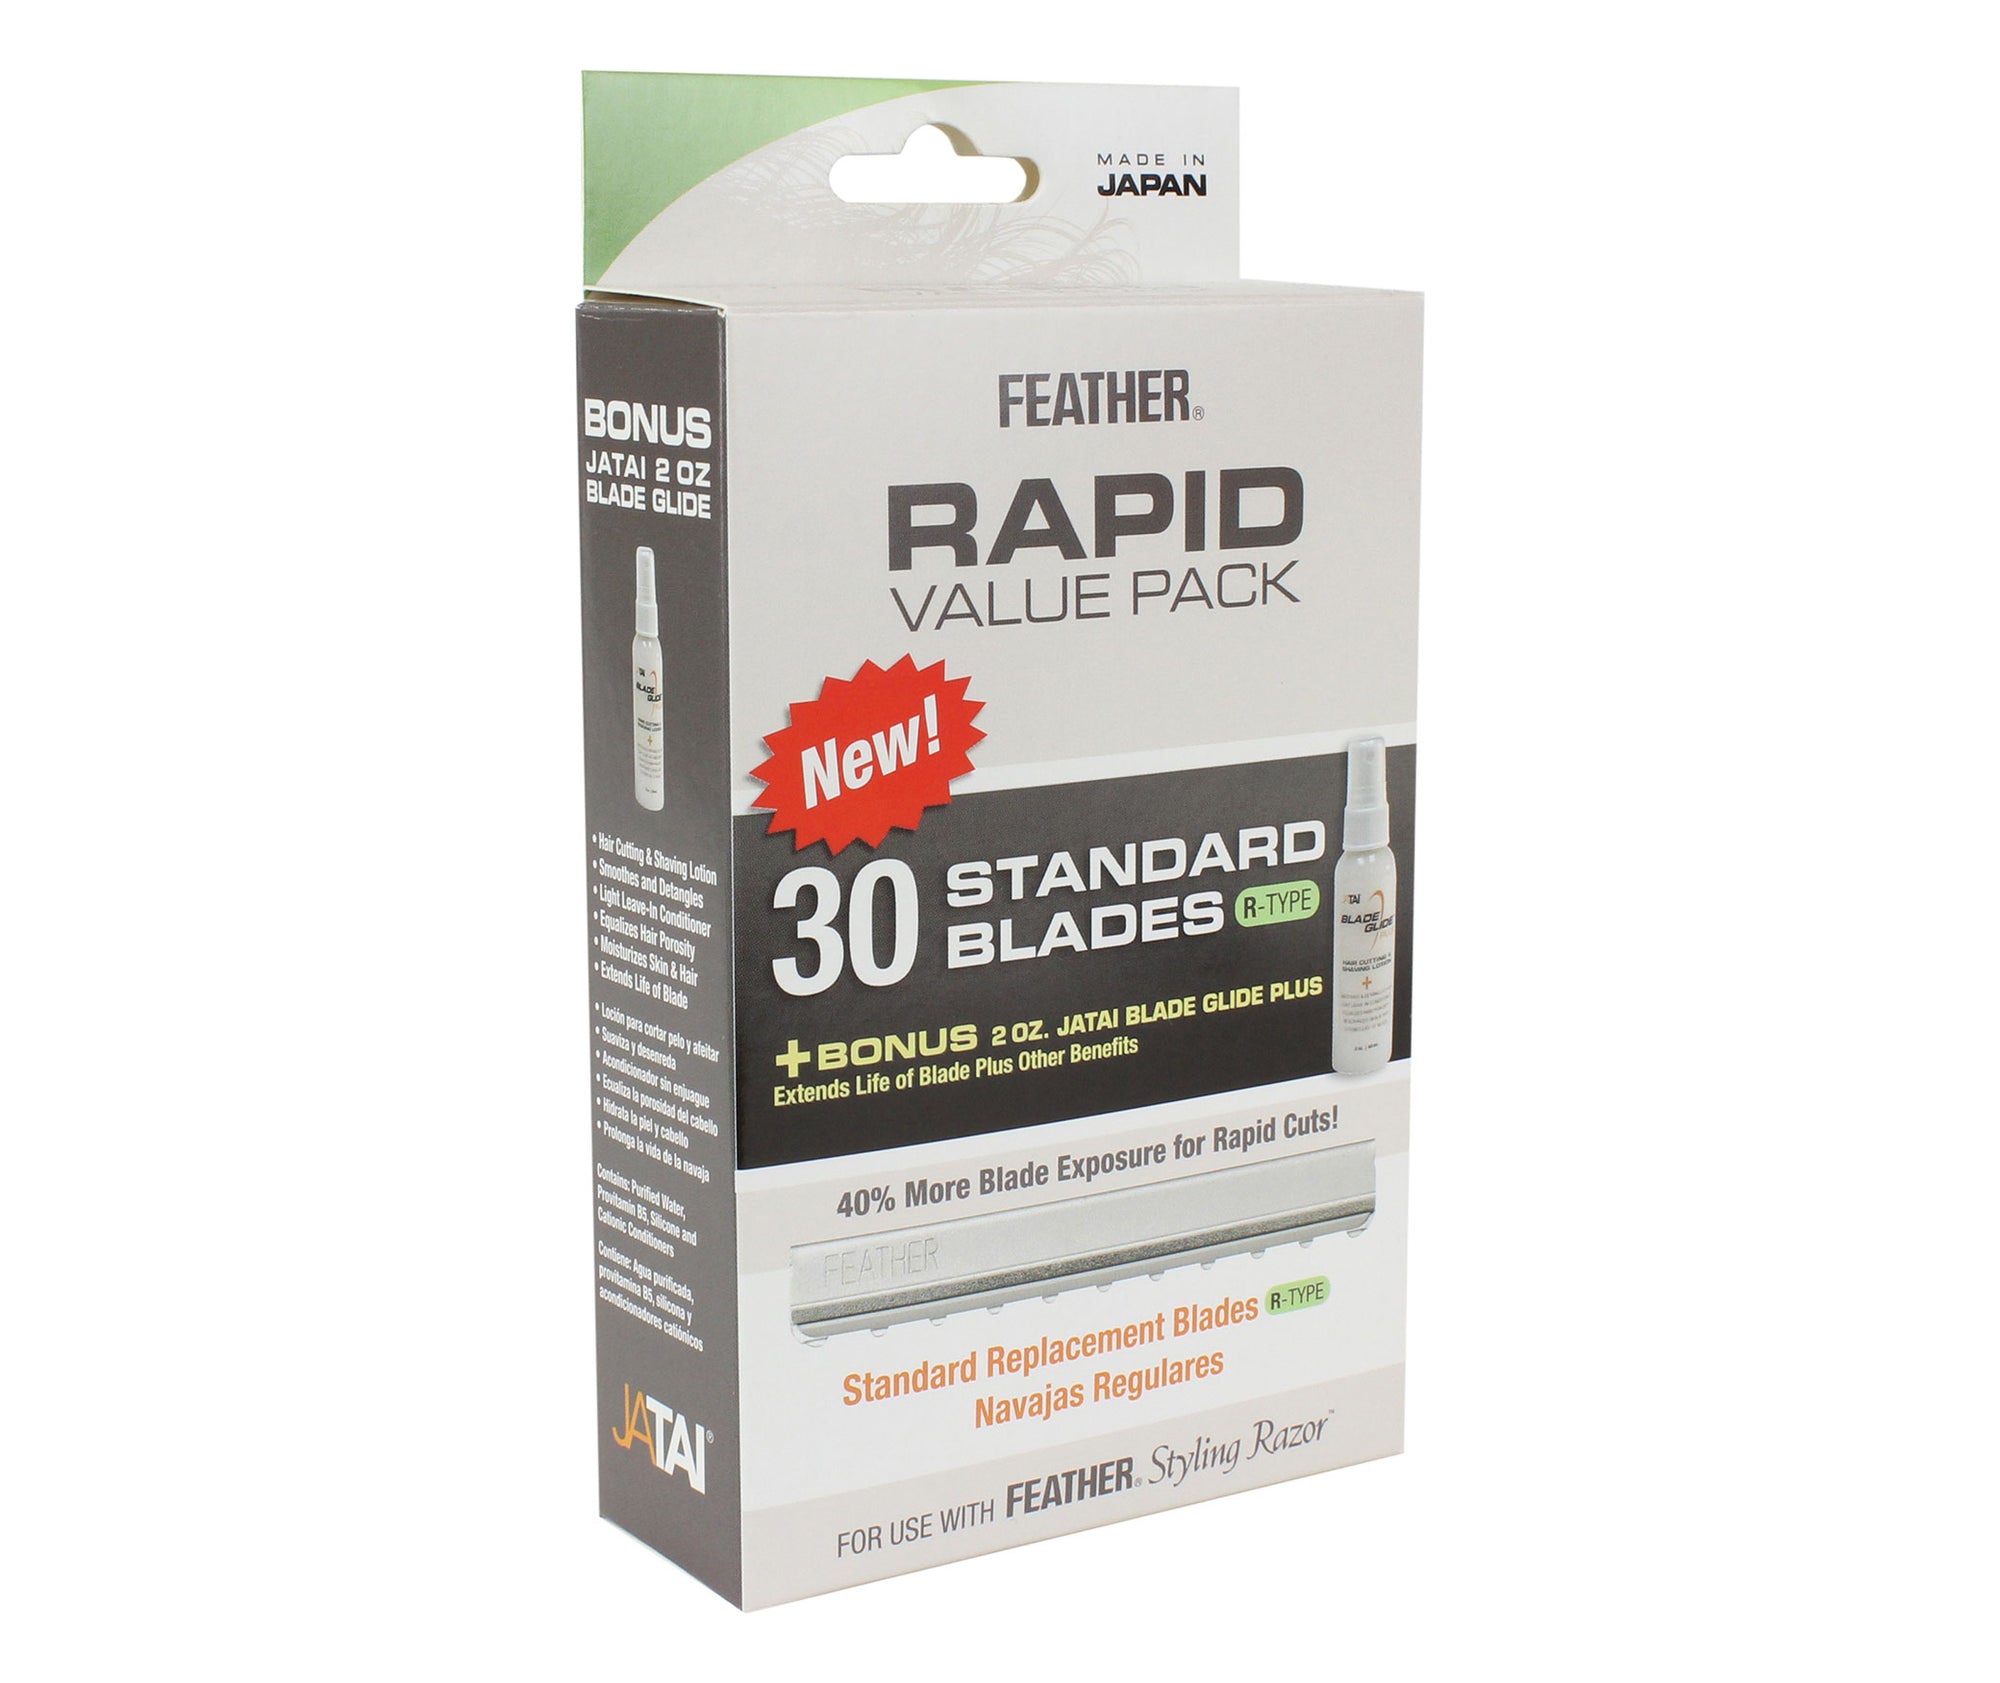 Feather Rapid Value Pack - 30 lames de type R + 2 oz. Glisser